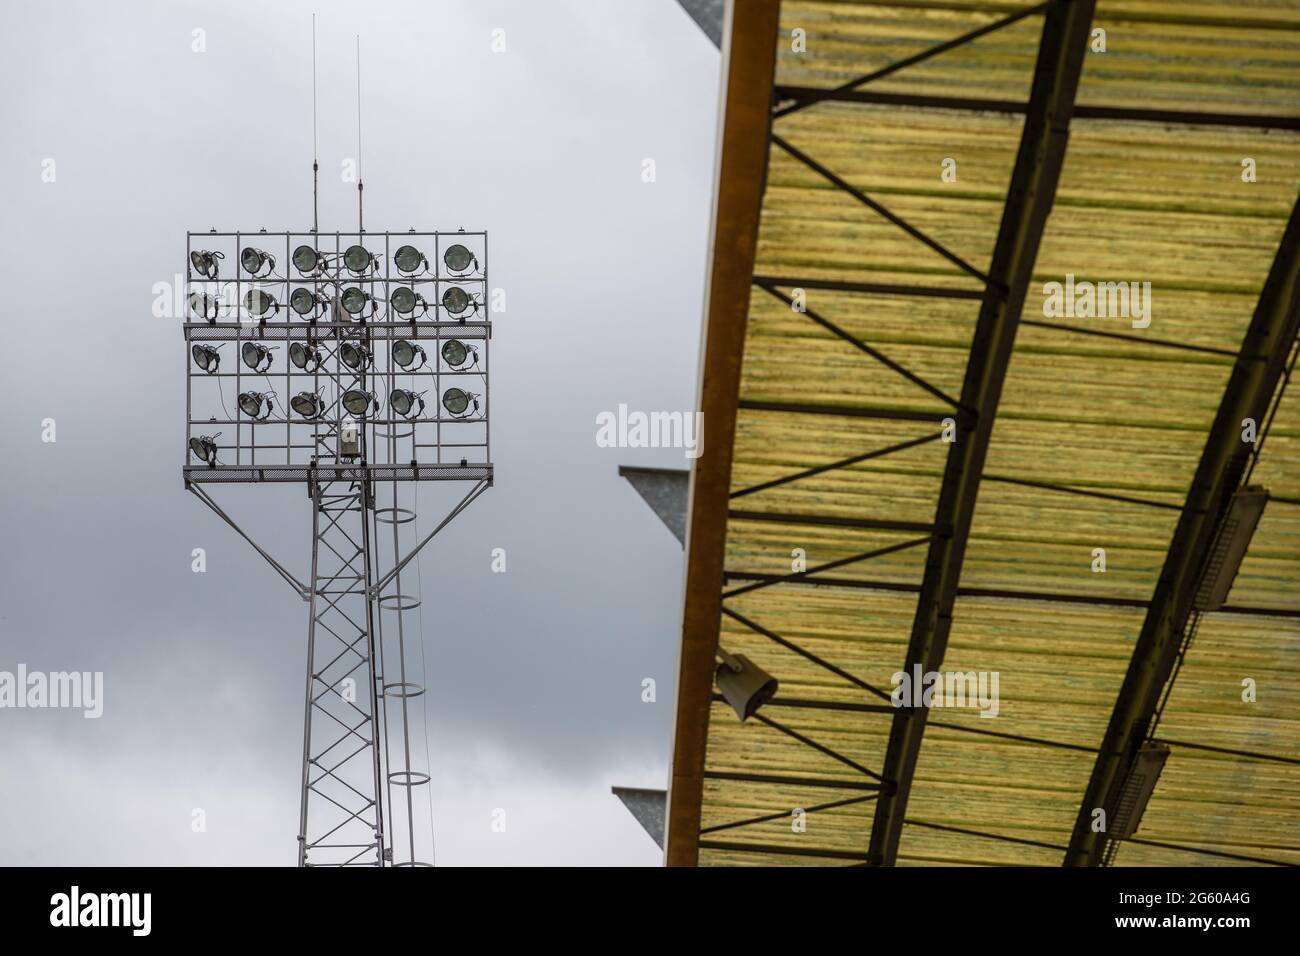 Tradizionale proiettore allo stadio di calcio in Inghilterra, Regno Unito Foto Stock